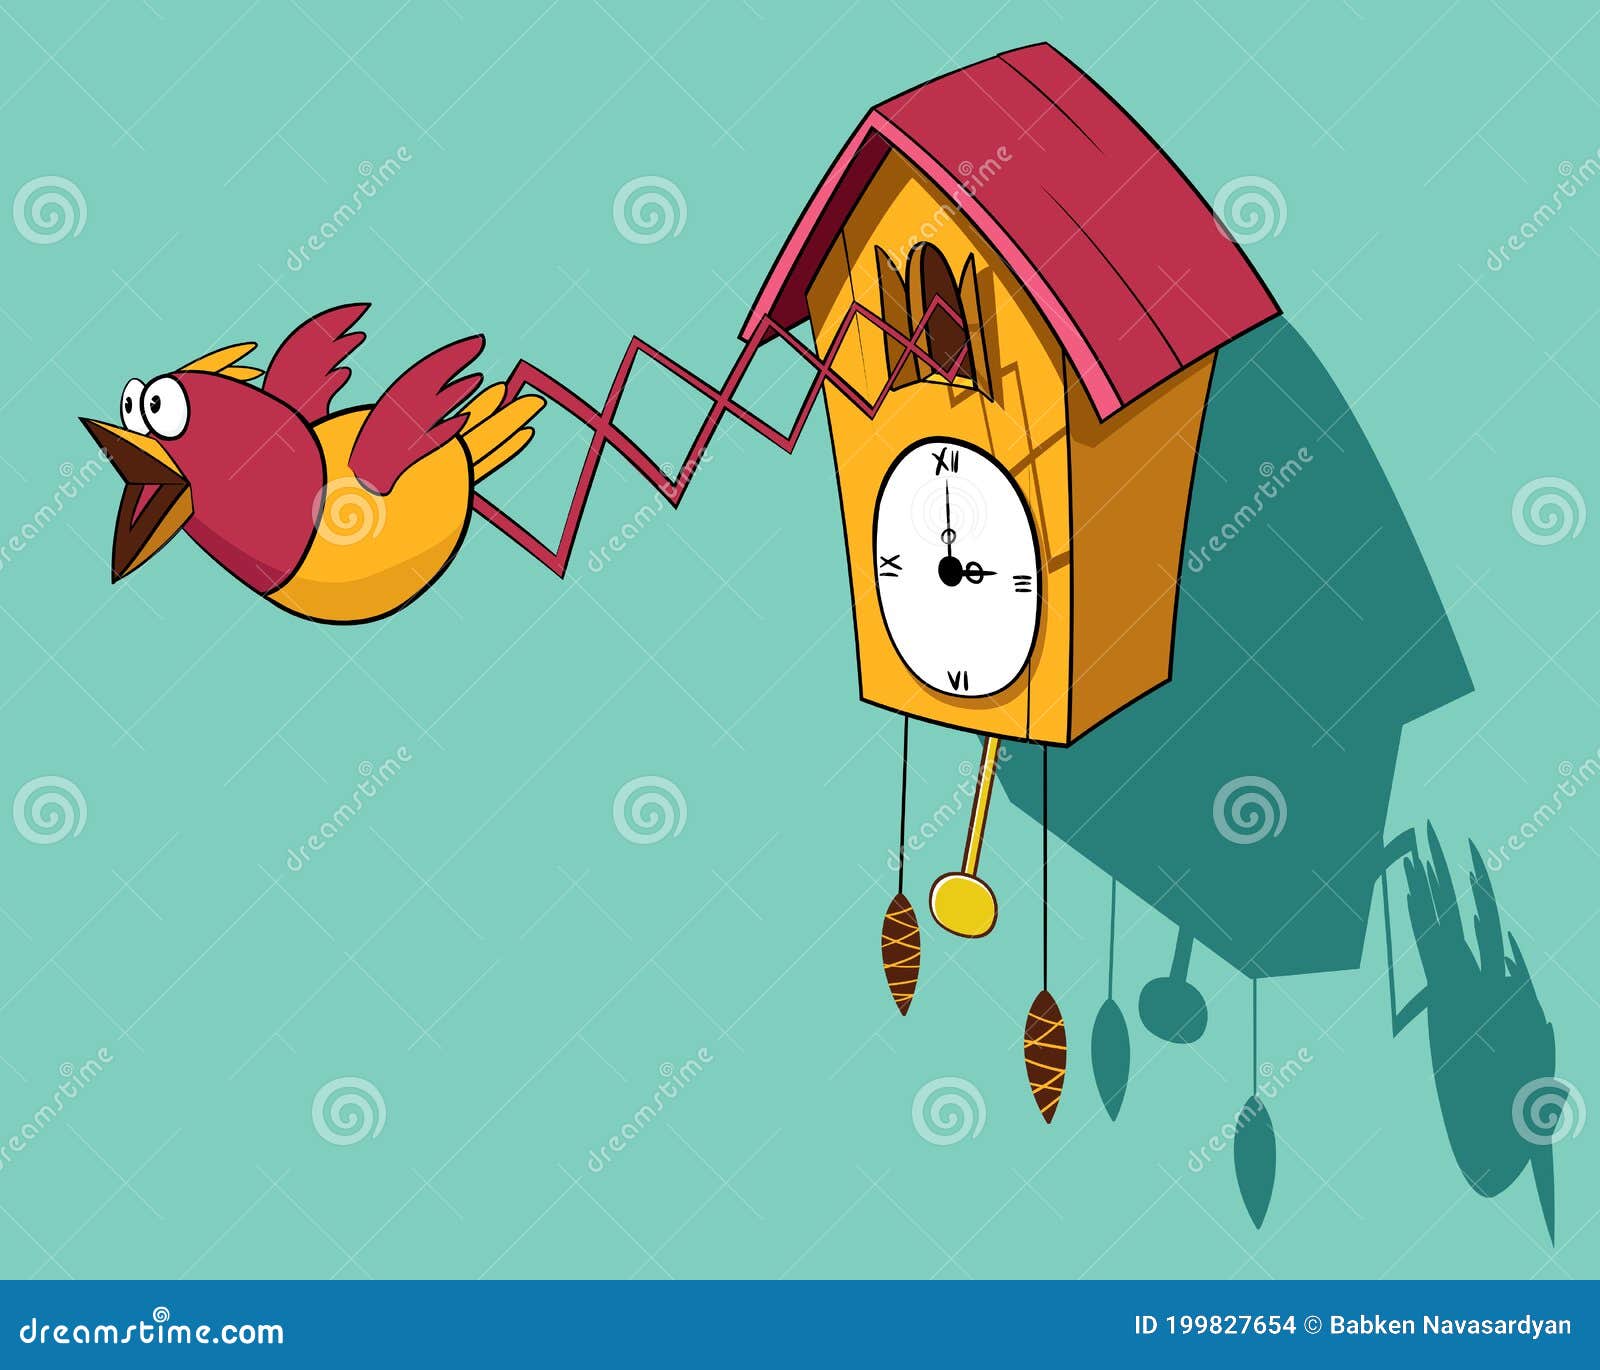 funny cartoon wooden cuckoo clock